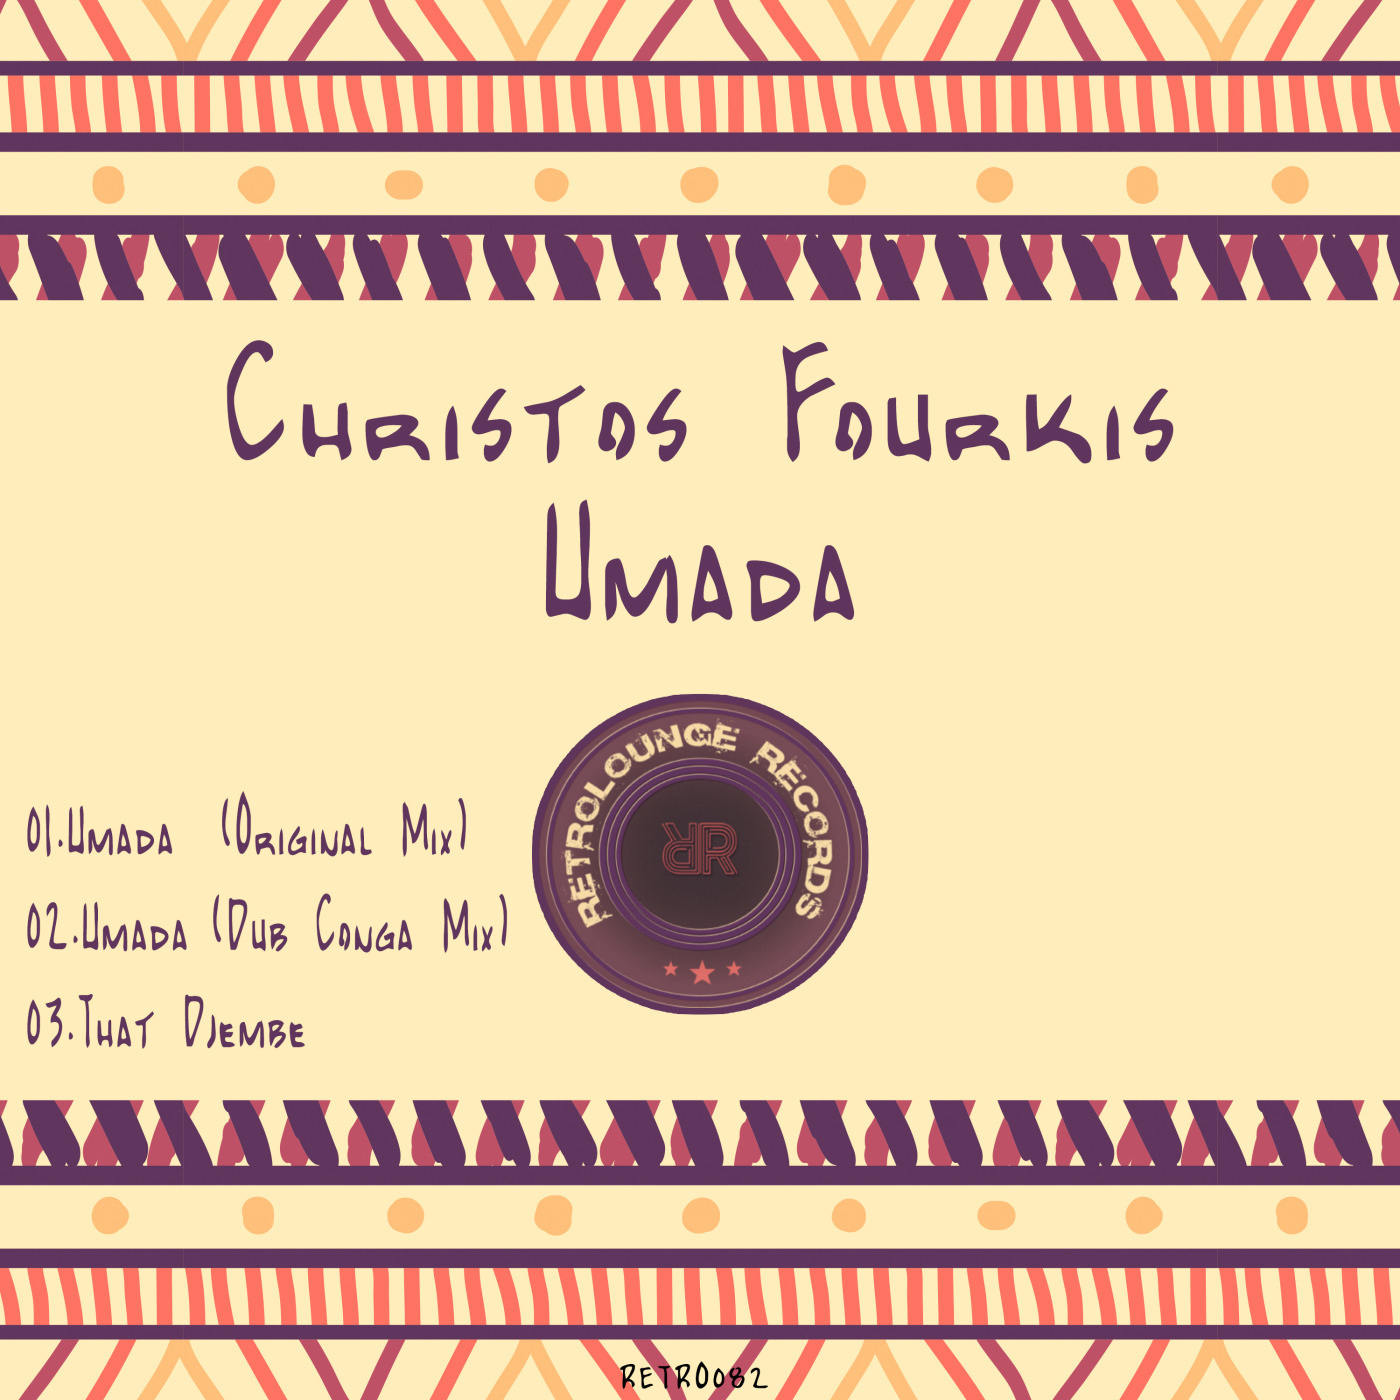 Christos Fourkis - Umada / Retrolounge Records